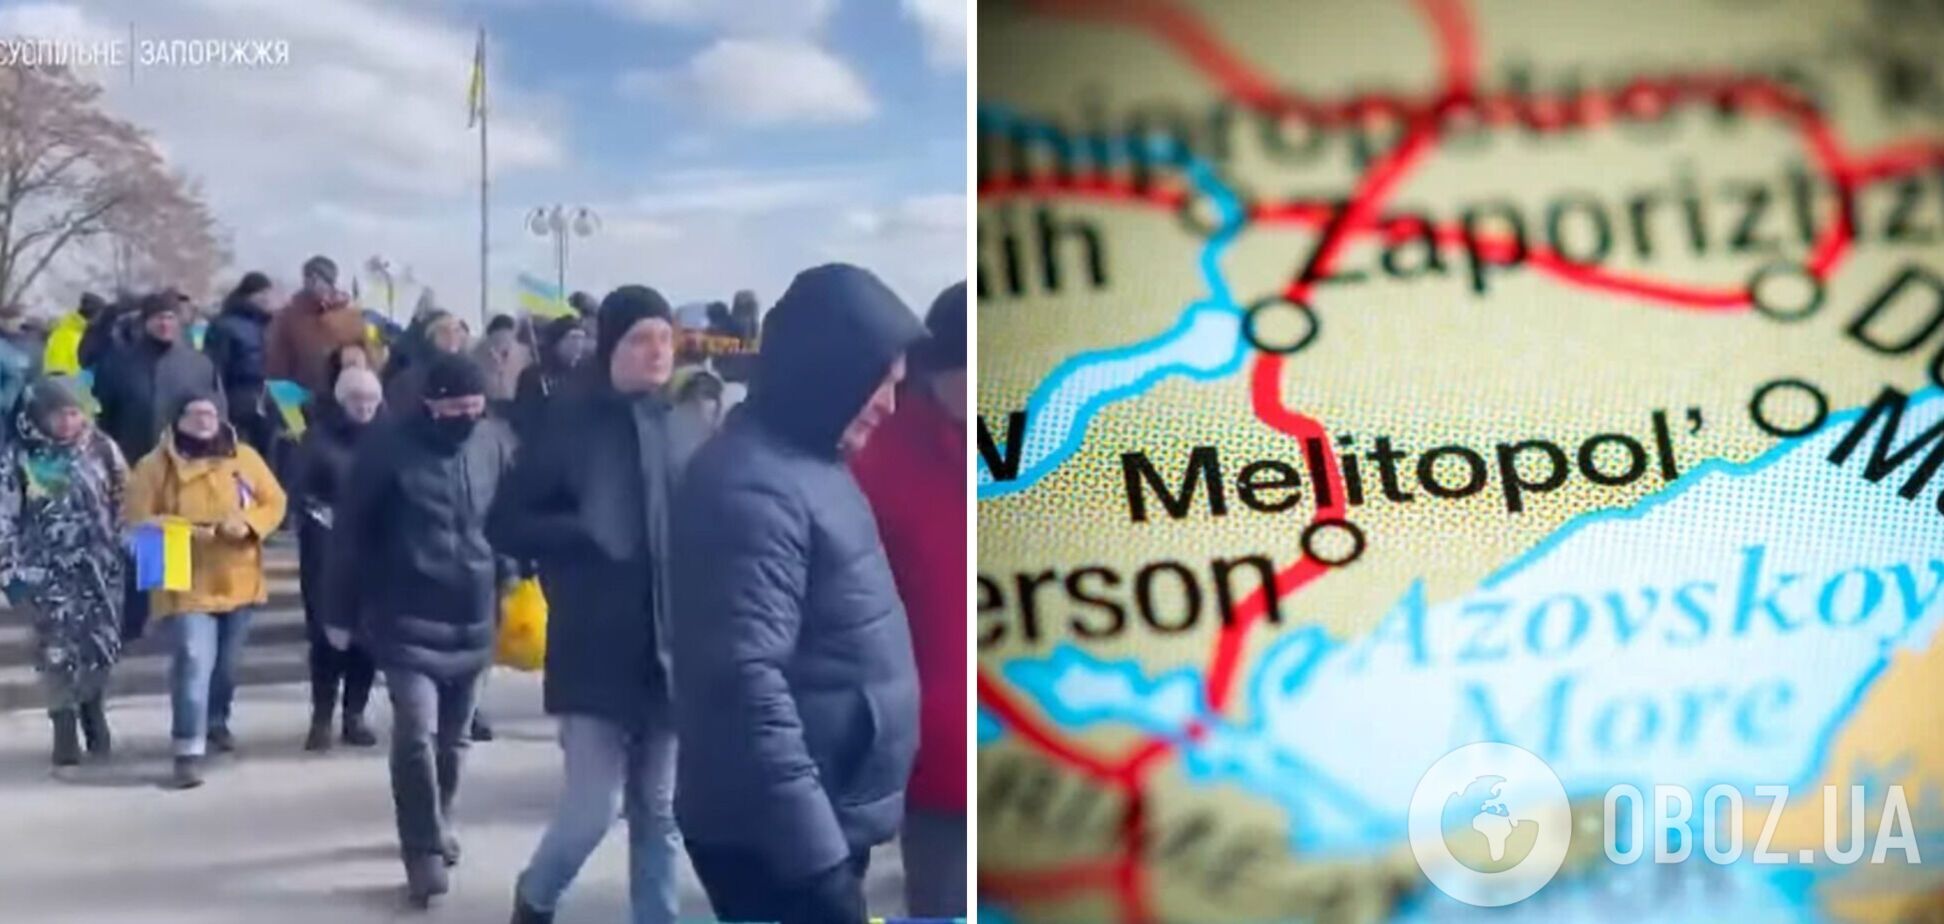 'Мелітополь – це Україна': люди з українськими прапорами вийшли на акцію проти окупантів. Відео